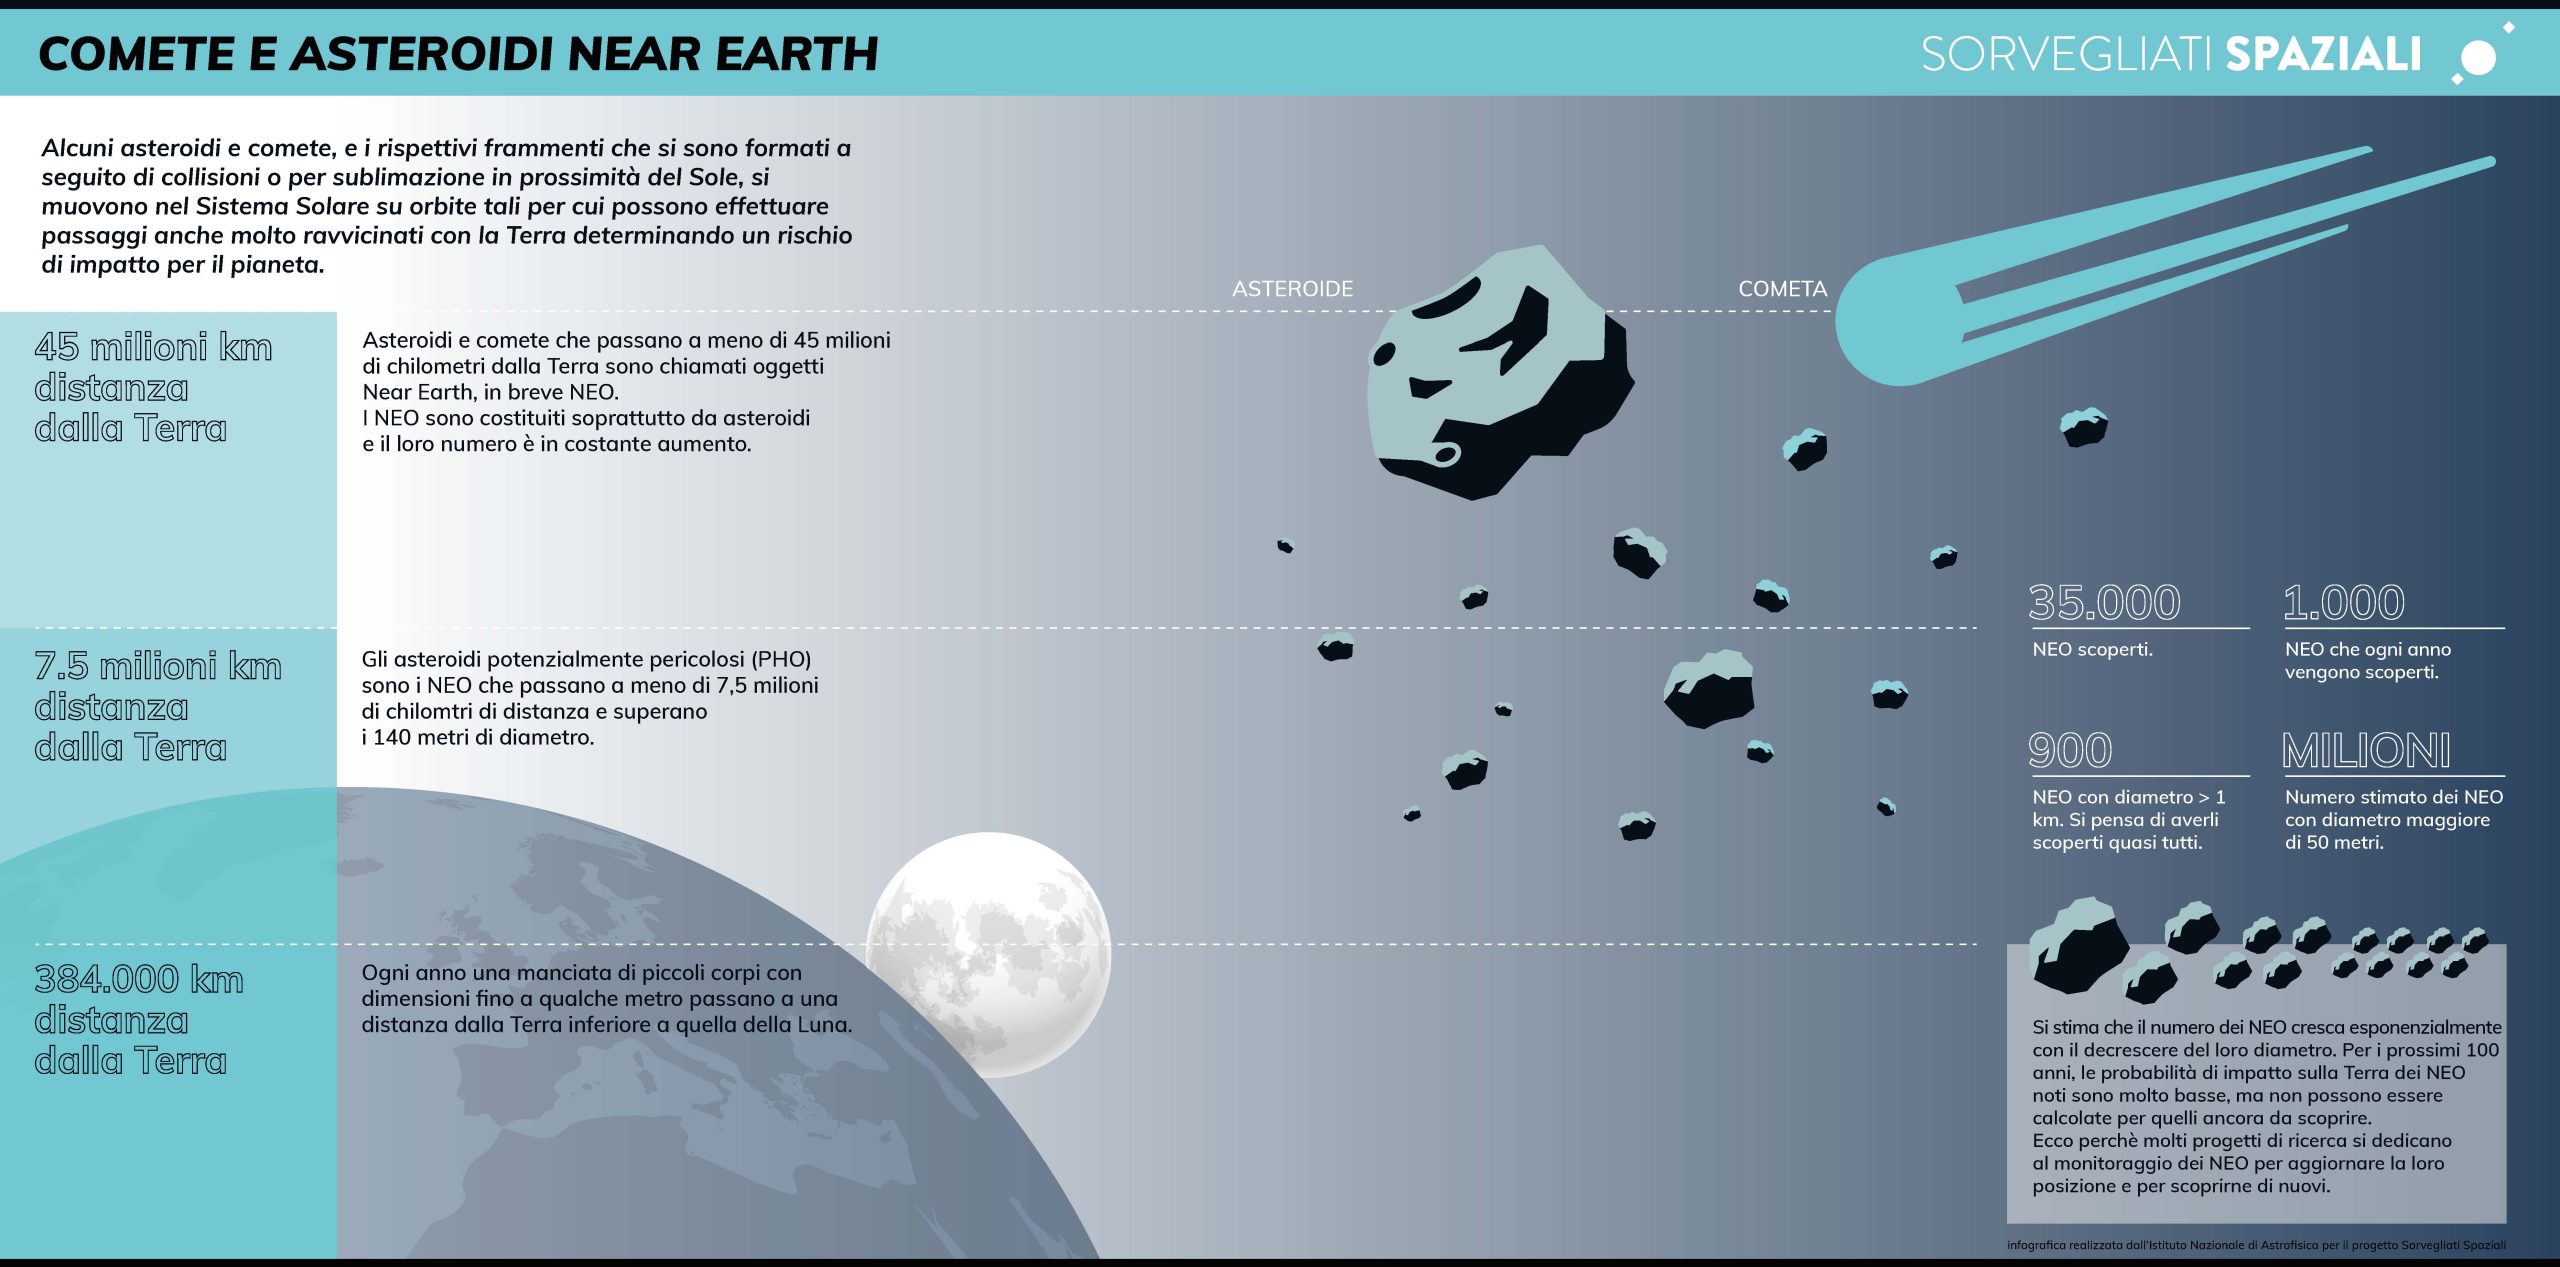 Infografica comete e asteroidi near earth